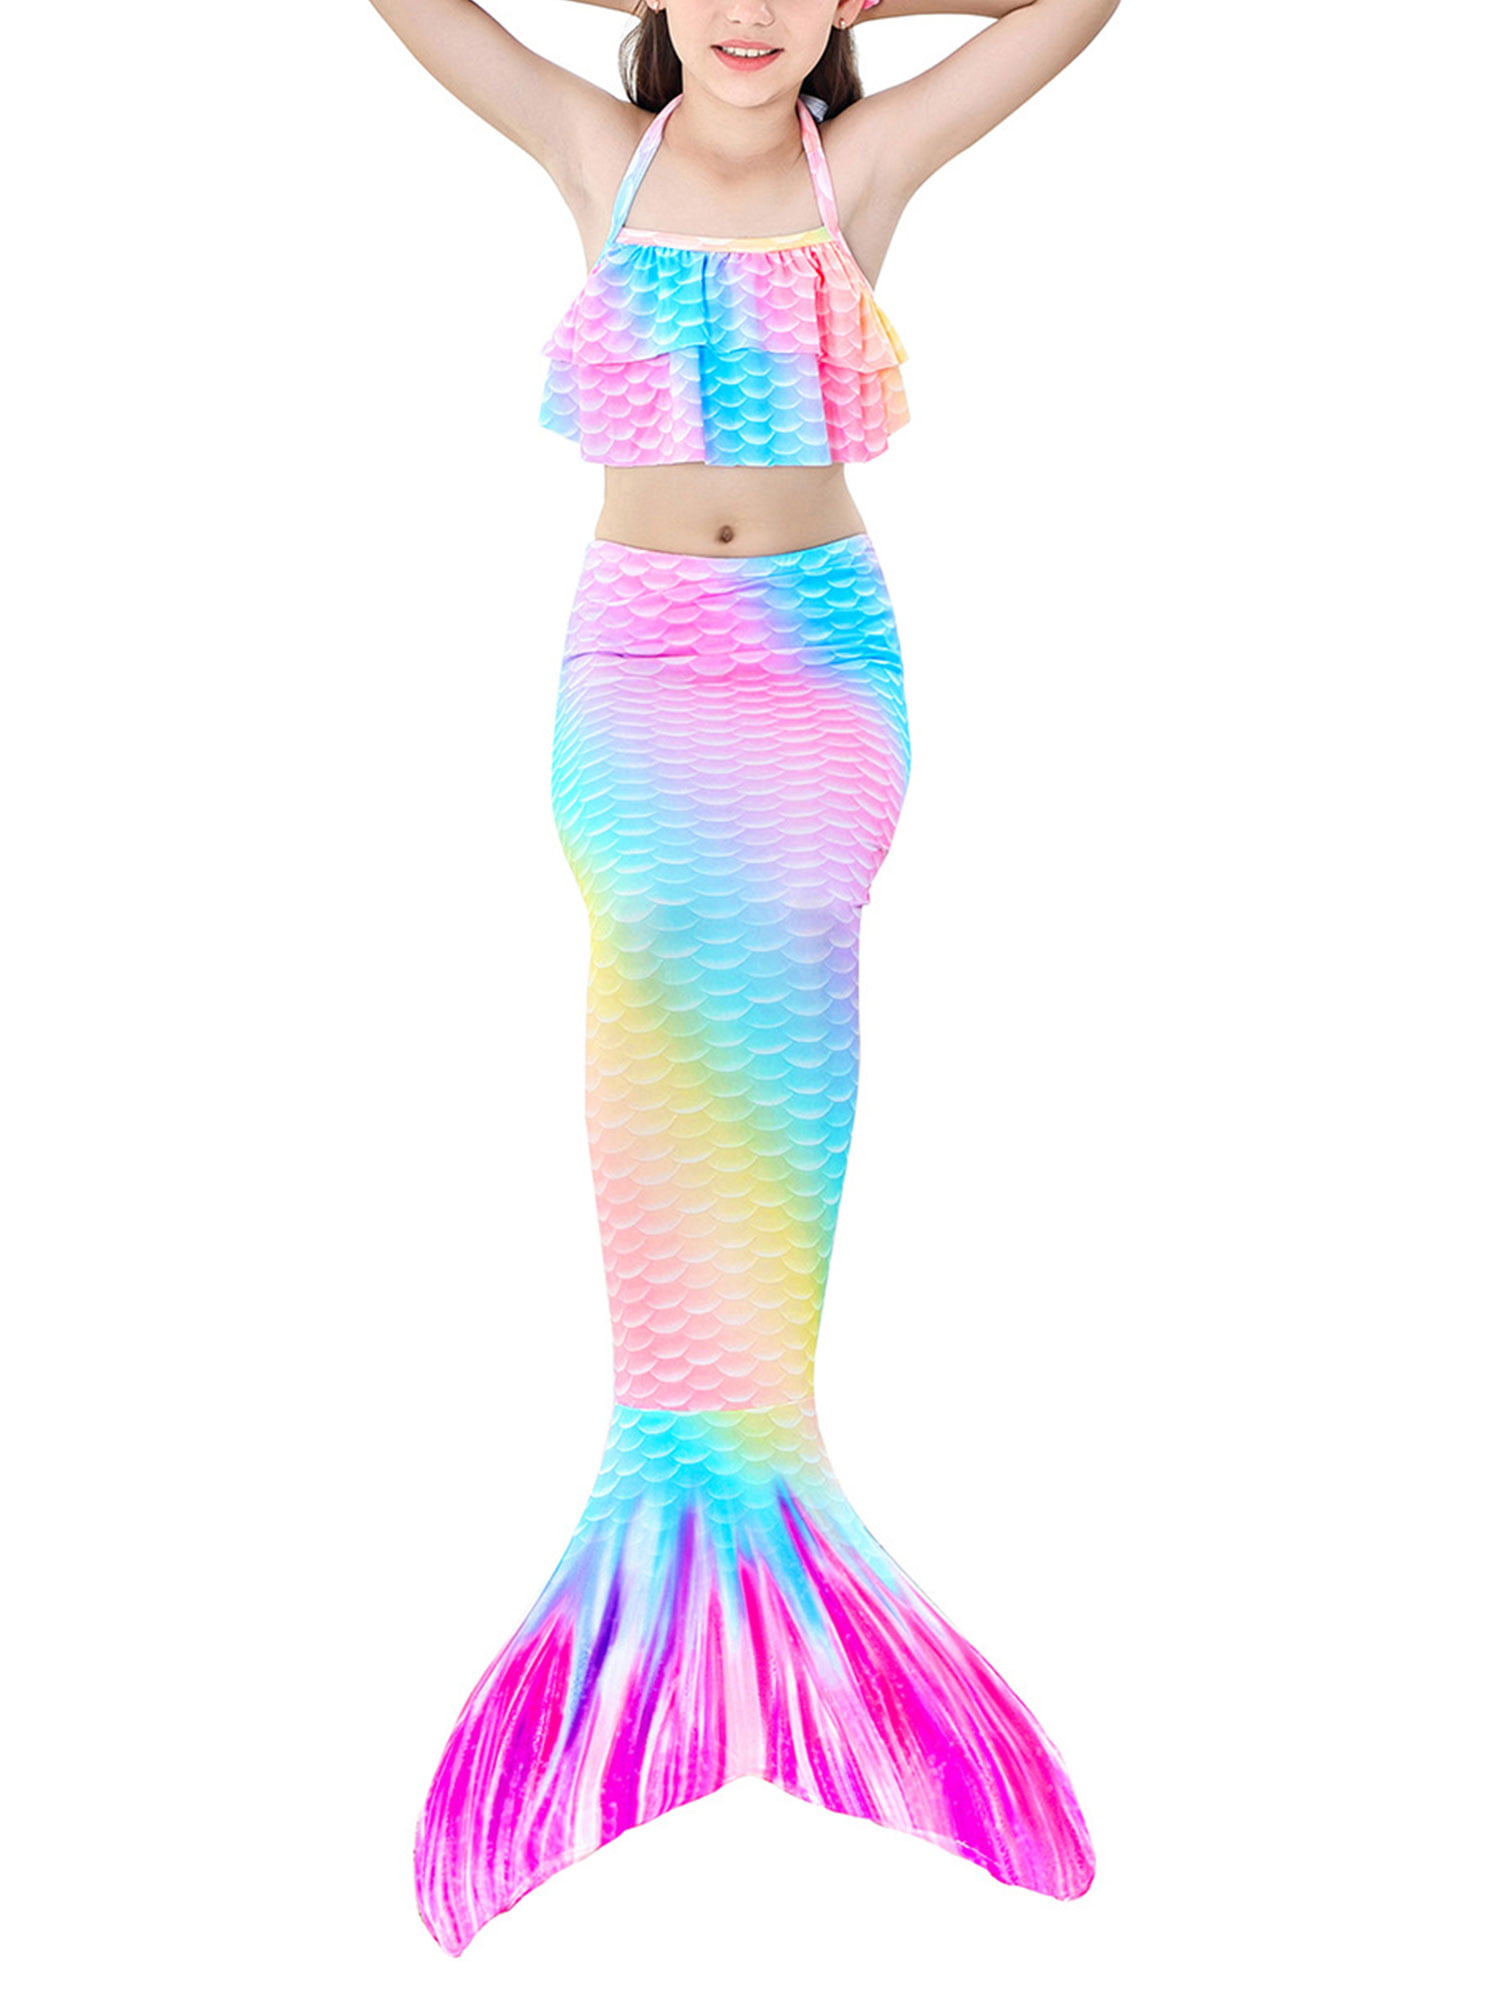 Mermaid Tails Swimwear,Swimming Costumes,Little Girls Swimsuit,Mermaid Tail Set